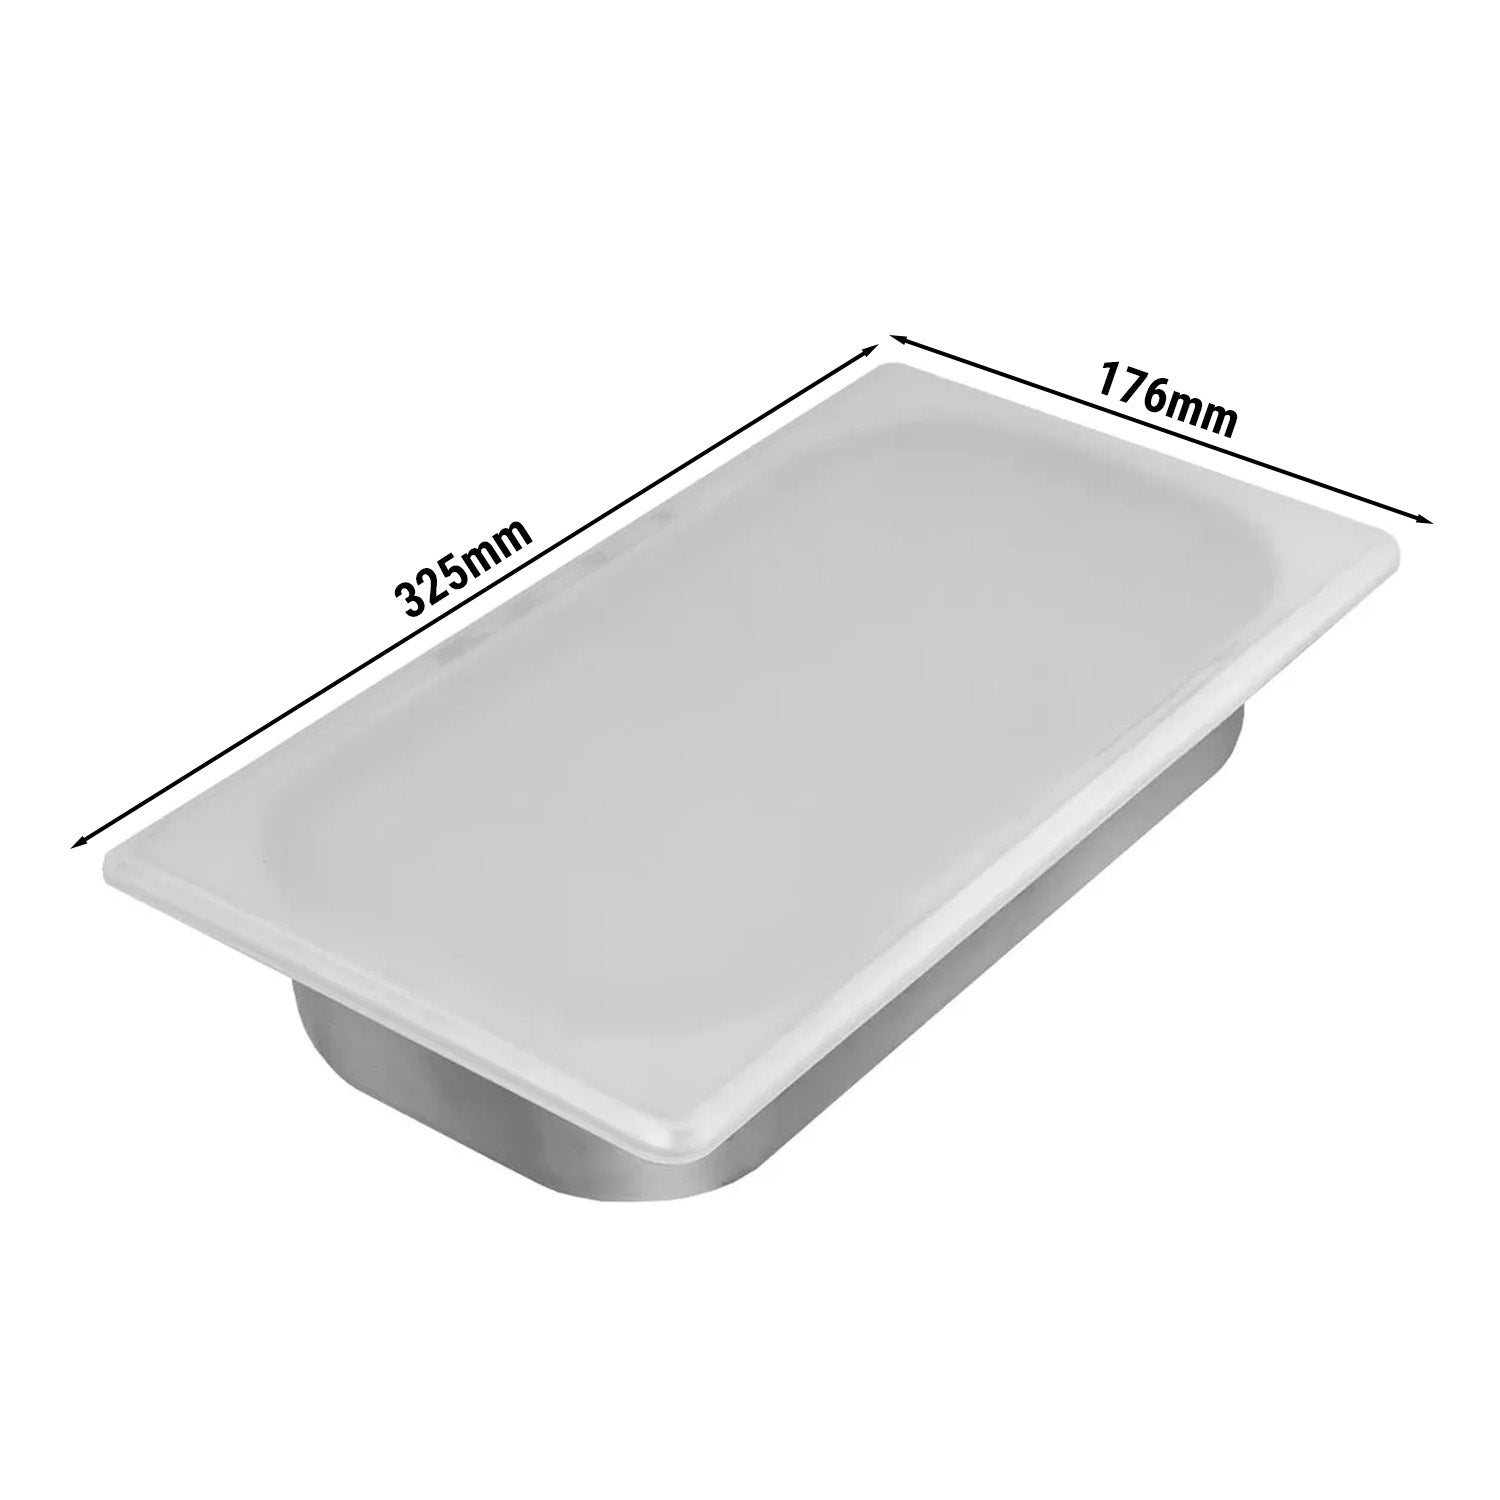 Silikonlokk for 1/3 GN -beholdere og isbeholdere (176 x 325 mm)